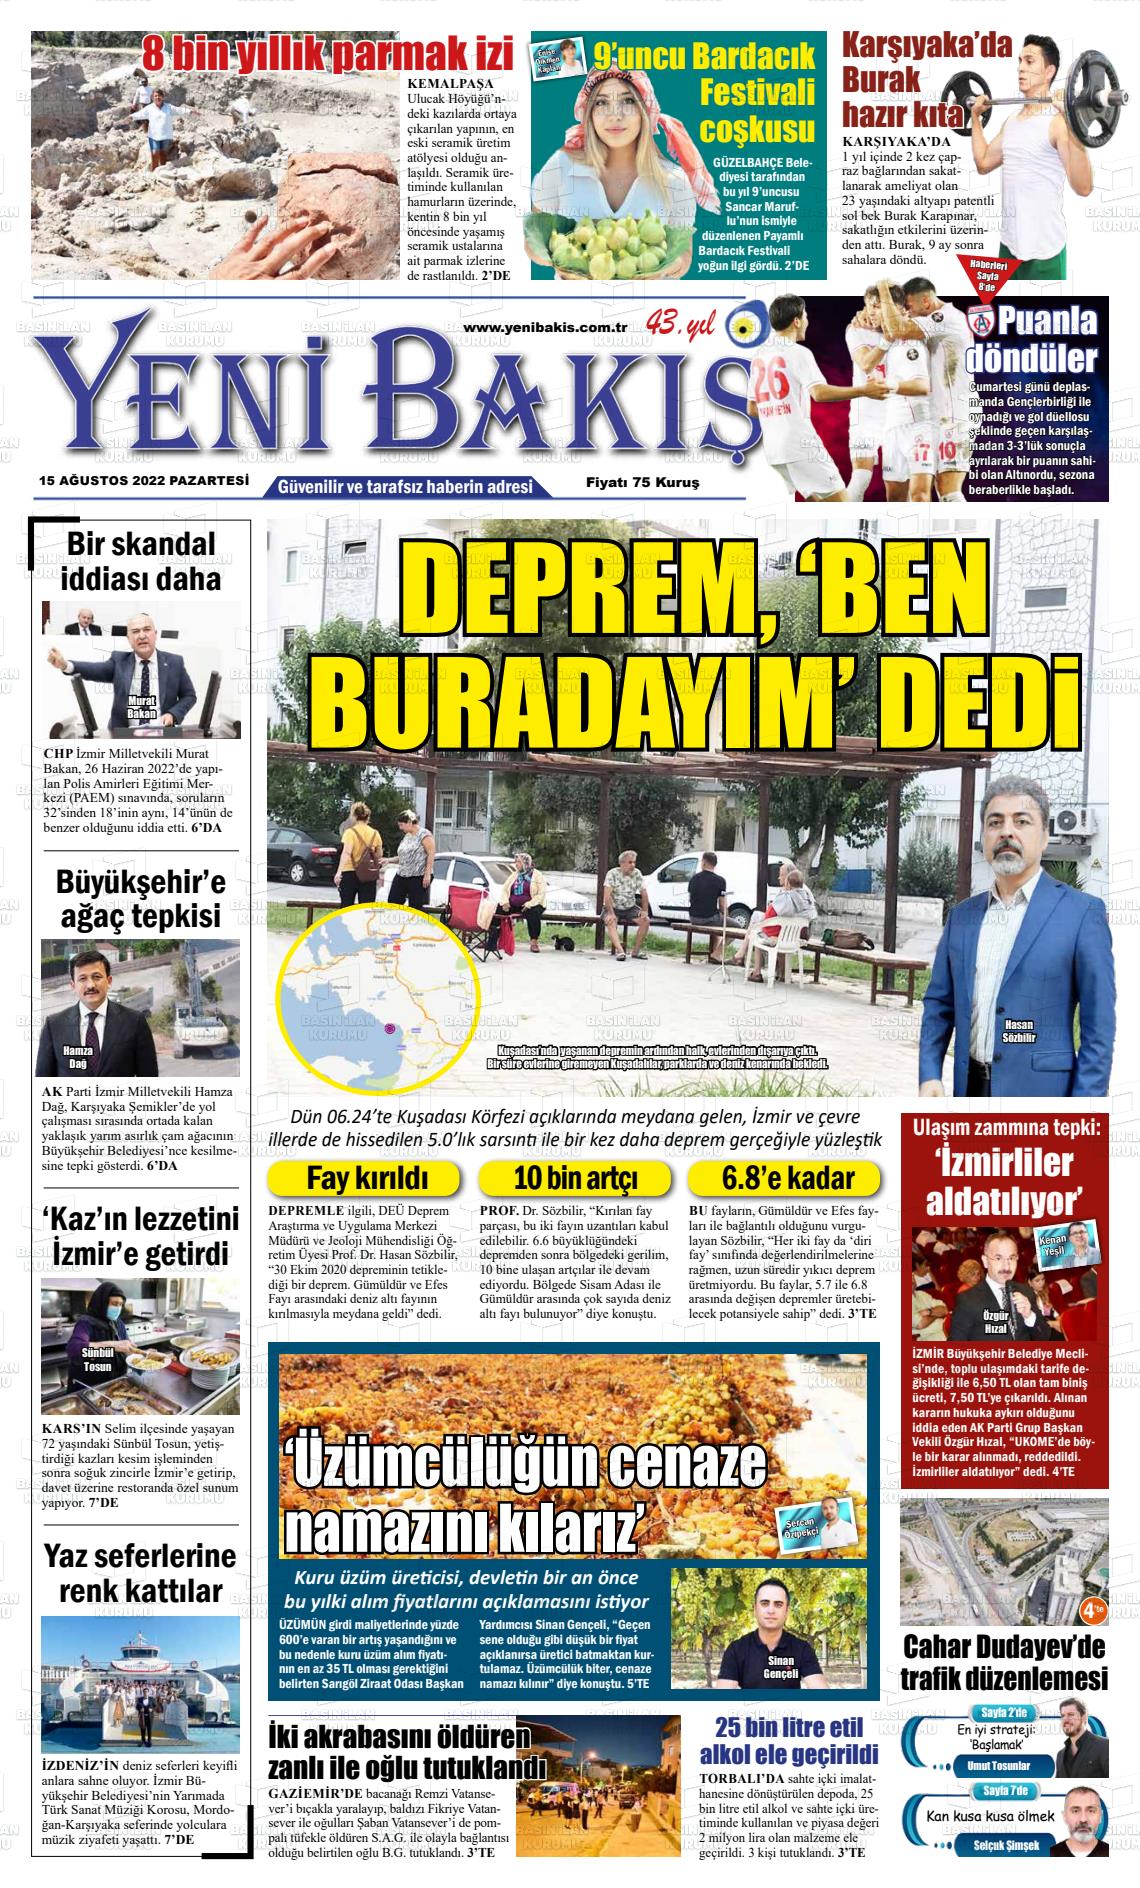 15 Ağustos 2022 Yeni Bakış Gazete Manşeti